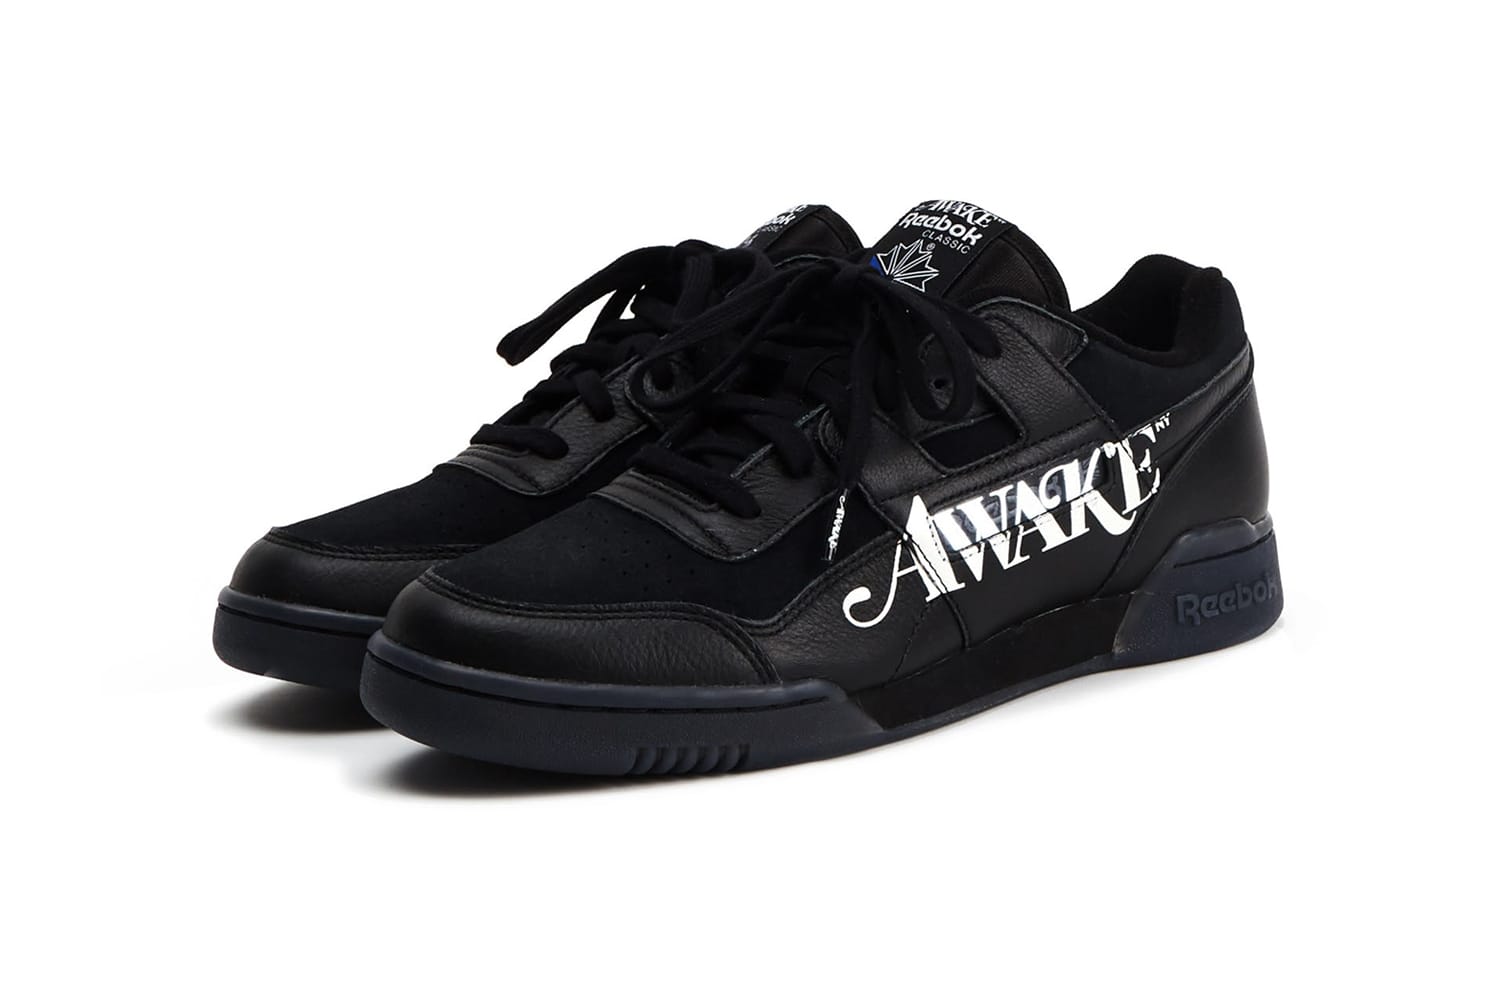 Awake NY x Reebok Classics Footwear & Apparel Capsule | HYPEBEAST